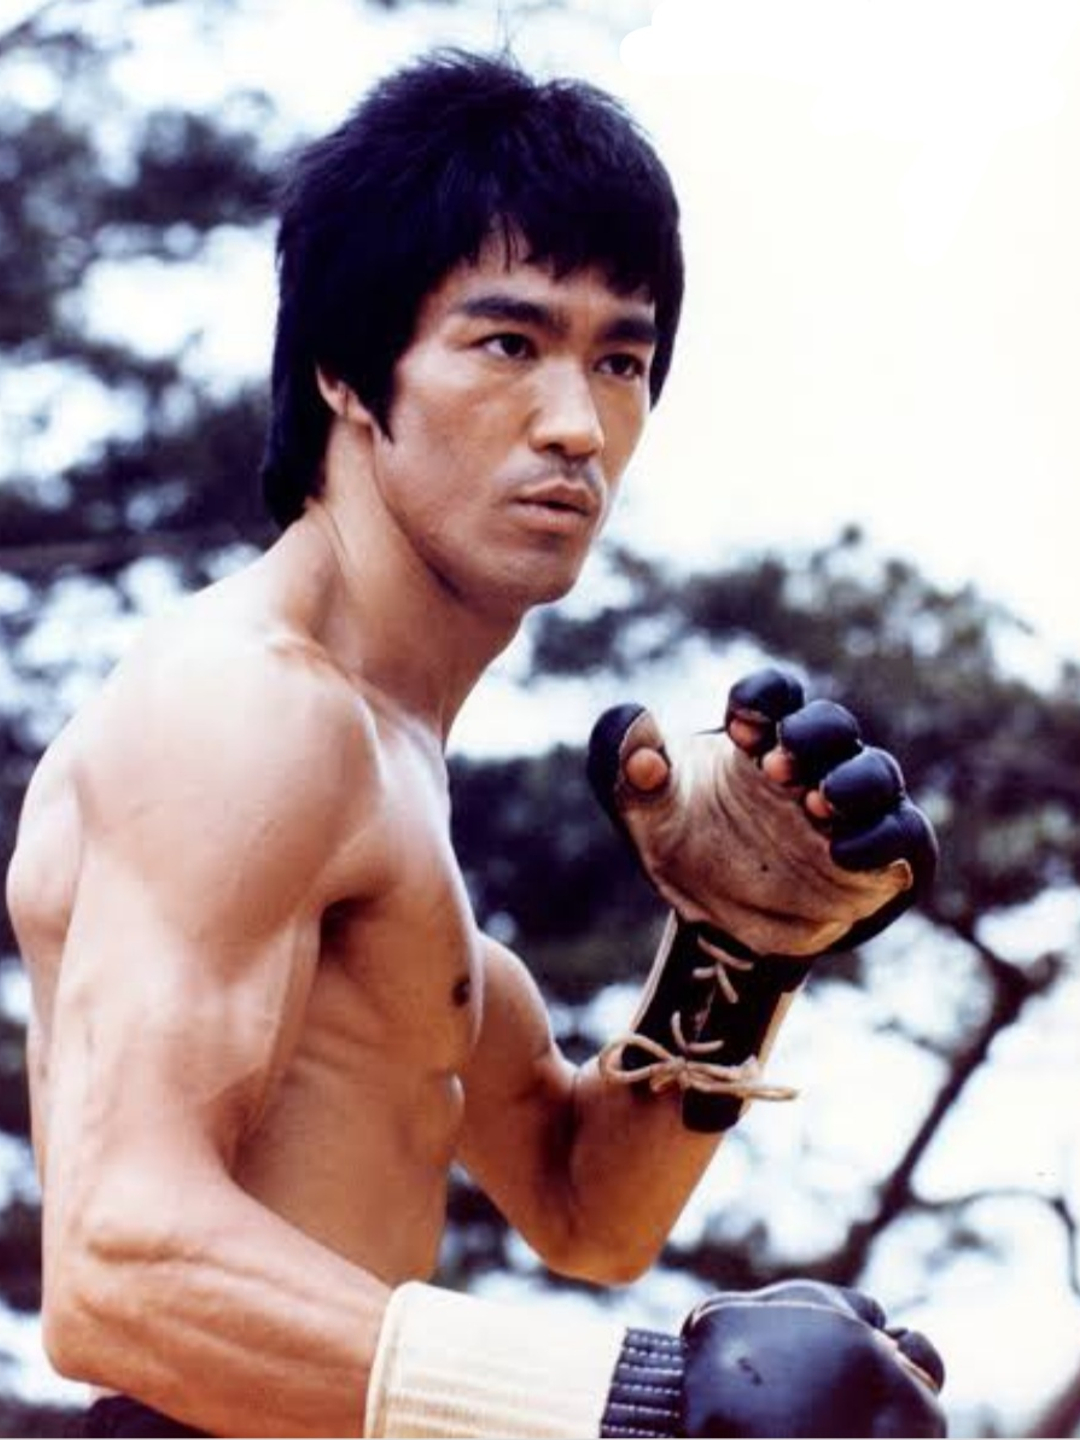 Bruce Lee when did he die